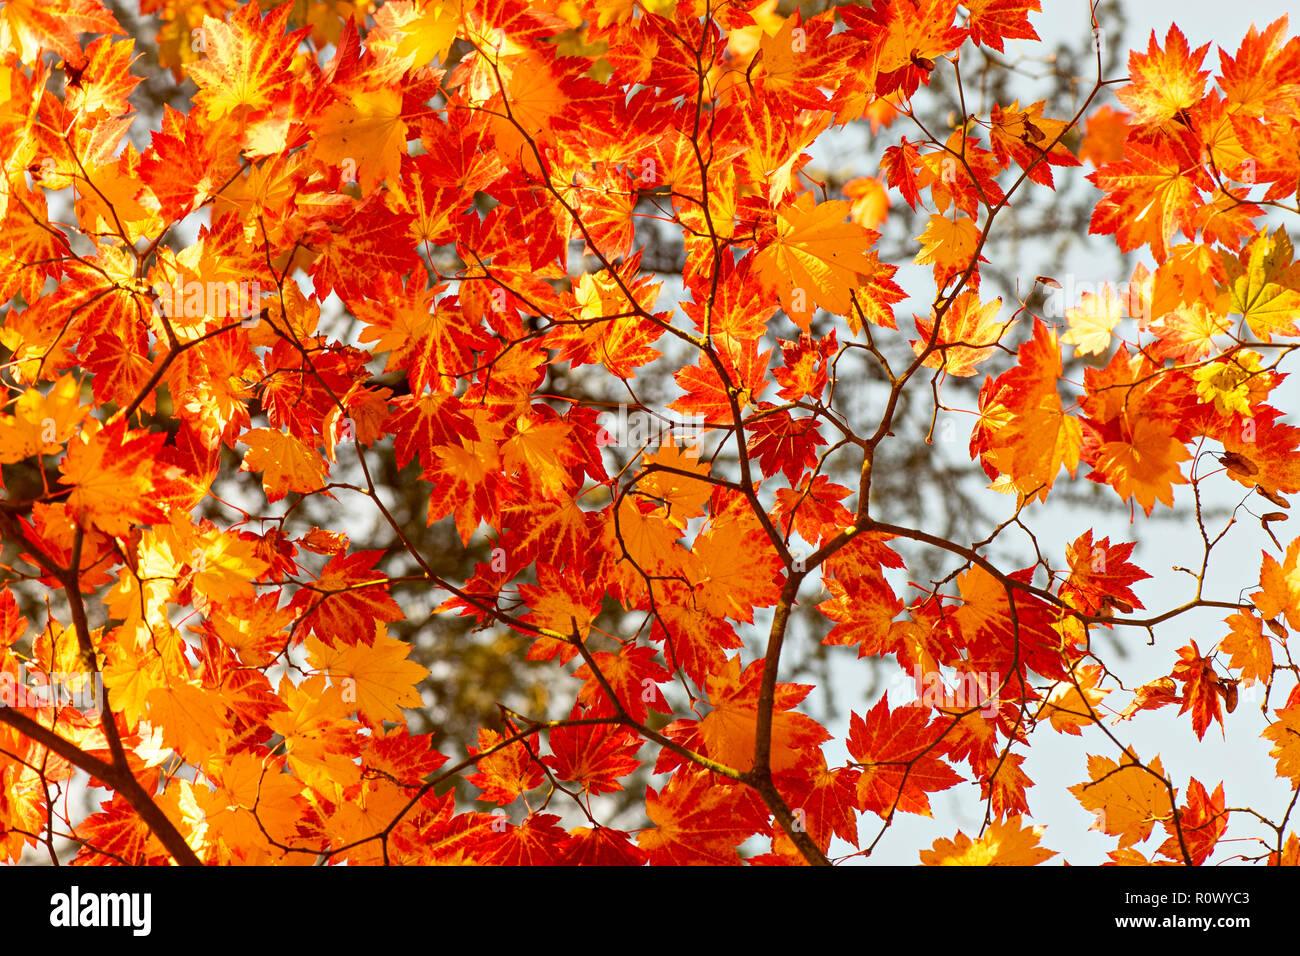 Nahaufnahme des lebhaften Herbst bunte Blätter der japanischen Ahorn - Acer palmatum Stockfoto